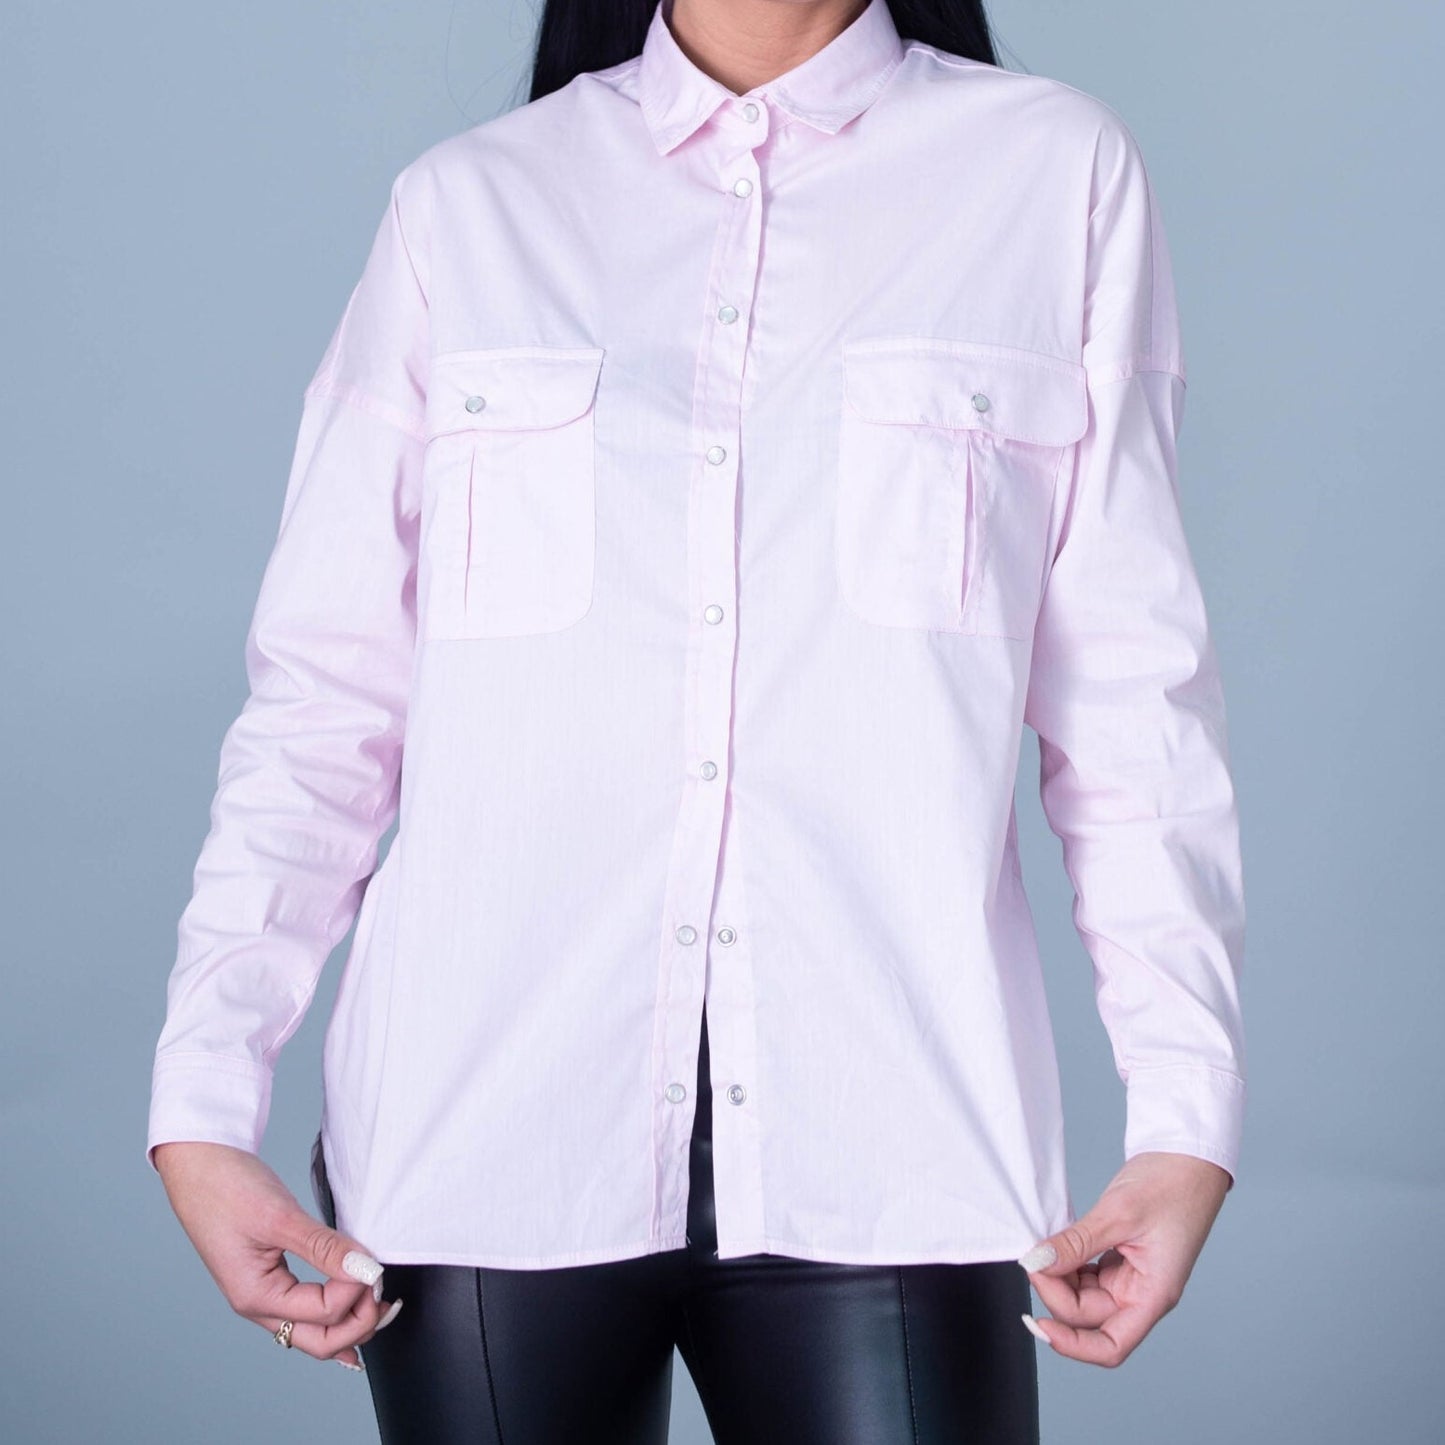 Дамска риза JUST CASTA  https://bvseductive.com/products/дамска-риза-just-casta  70 % памук 27 % нилон 3 % еластан дамска риза в бледо розово модел с яка и дълъг ръкав модел с изчистен и класически дизайн